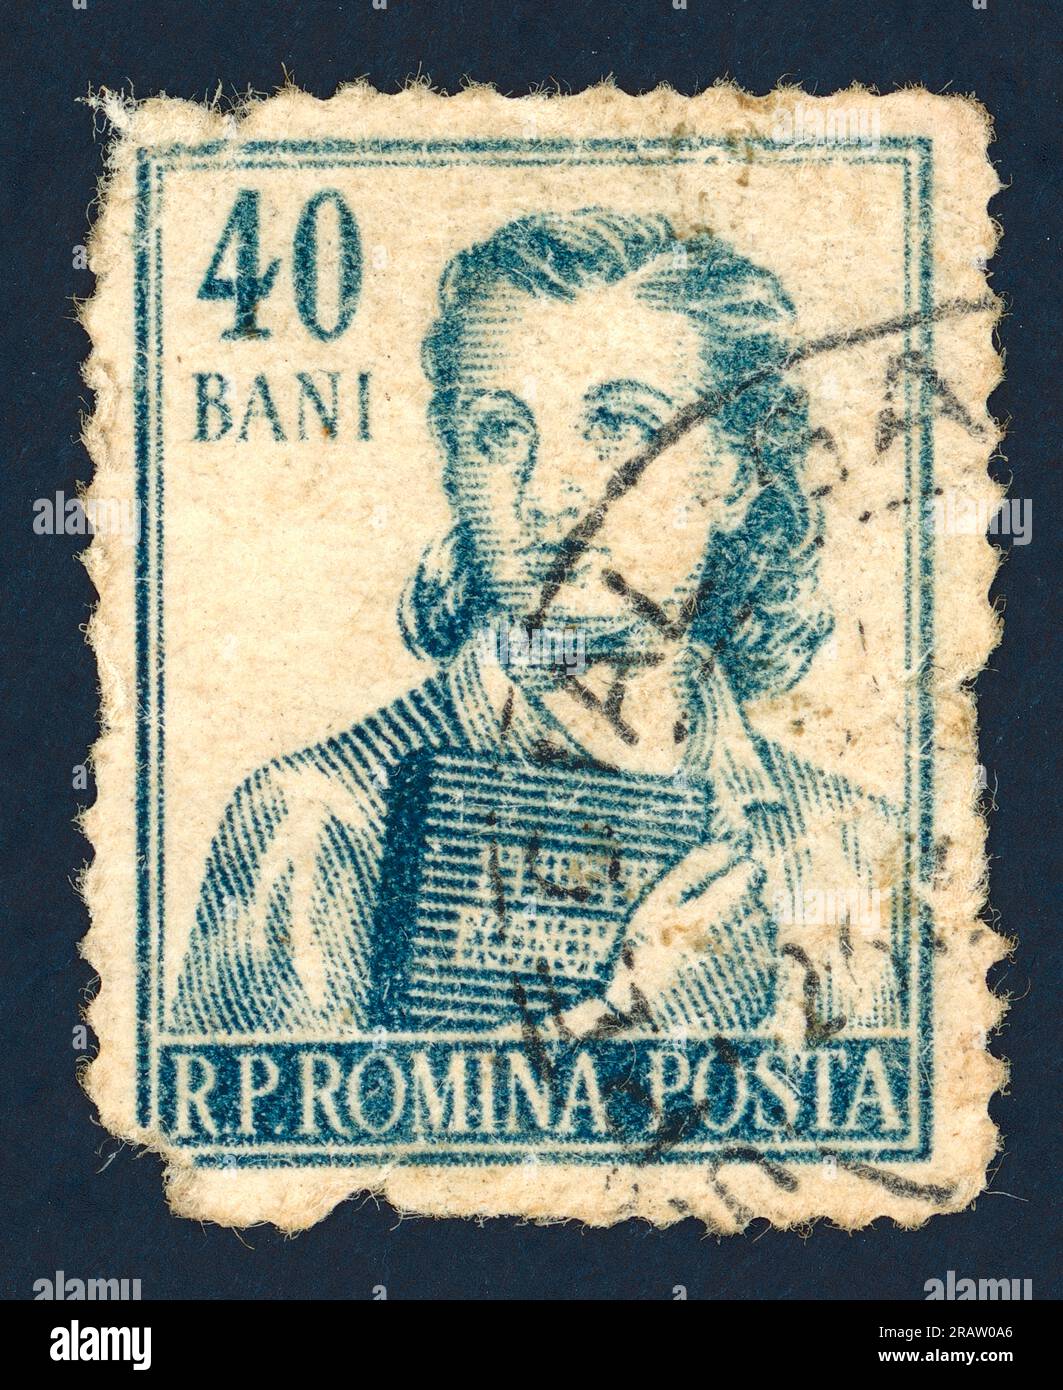 Francobollo emesso in Romania nel 1955: Una studentessa di economia (serie Occupations). Valore nominale: 40 bani (40 divieti rumeni, 100 divieti sono 1 leu). Foto Stock